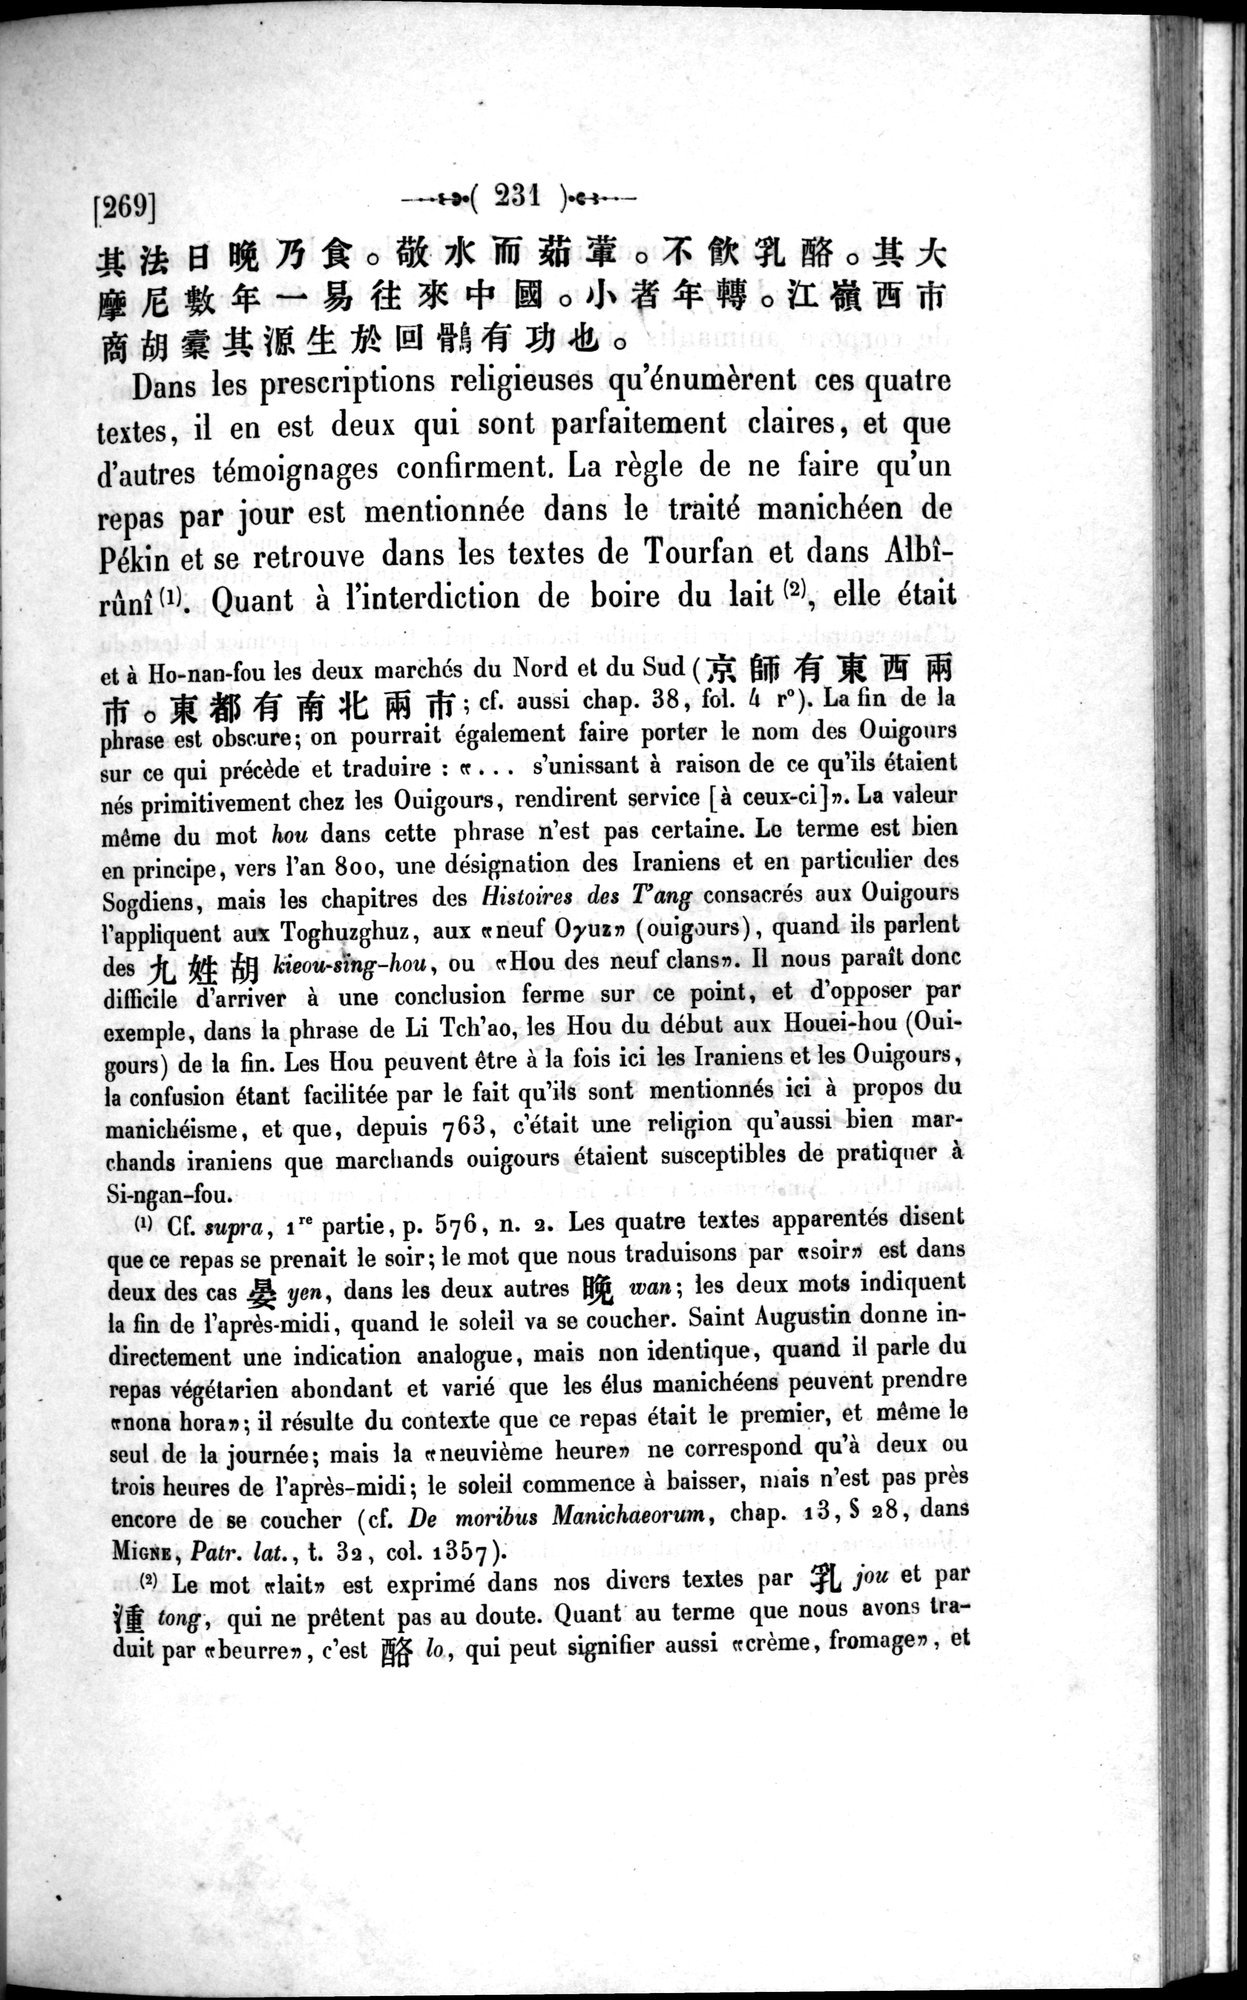 Un traité manichéen retrouvé en Chine : vol.1 / Page 241 (Grayscale High Resolution Image)